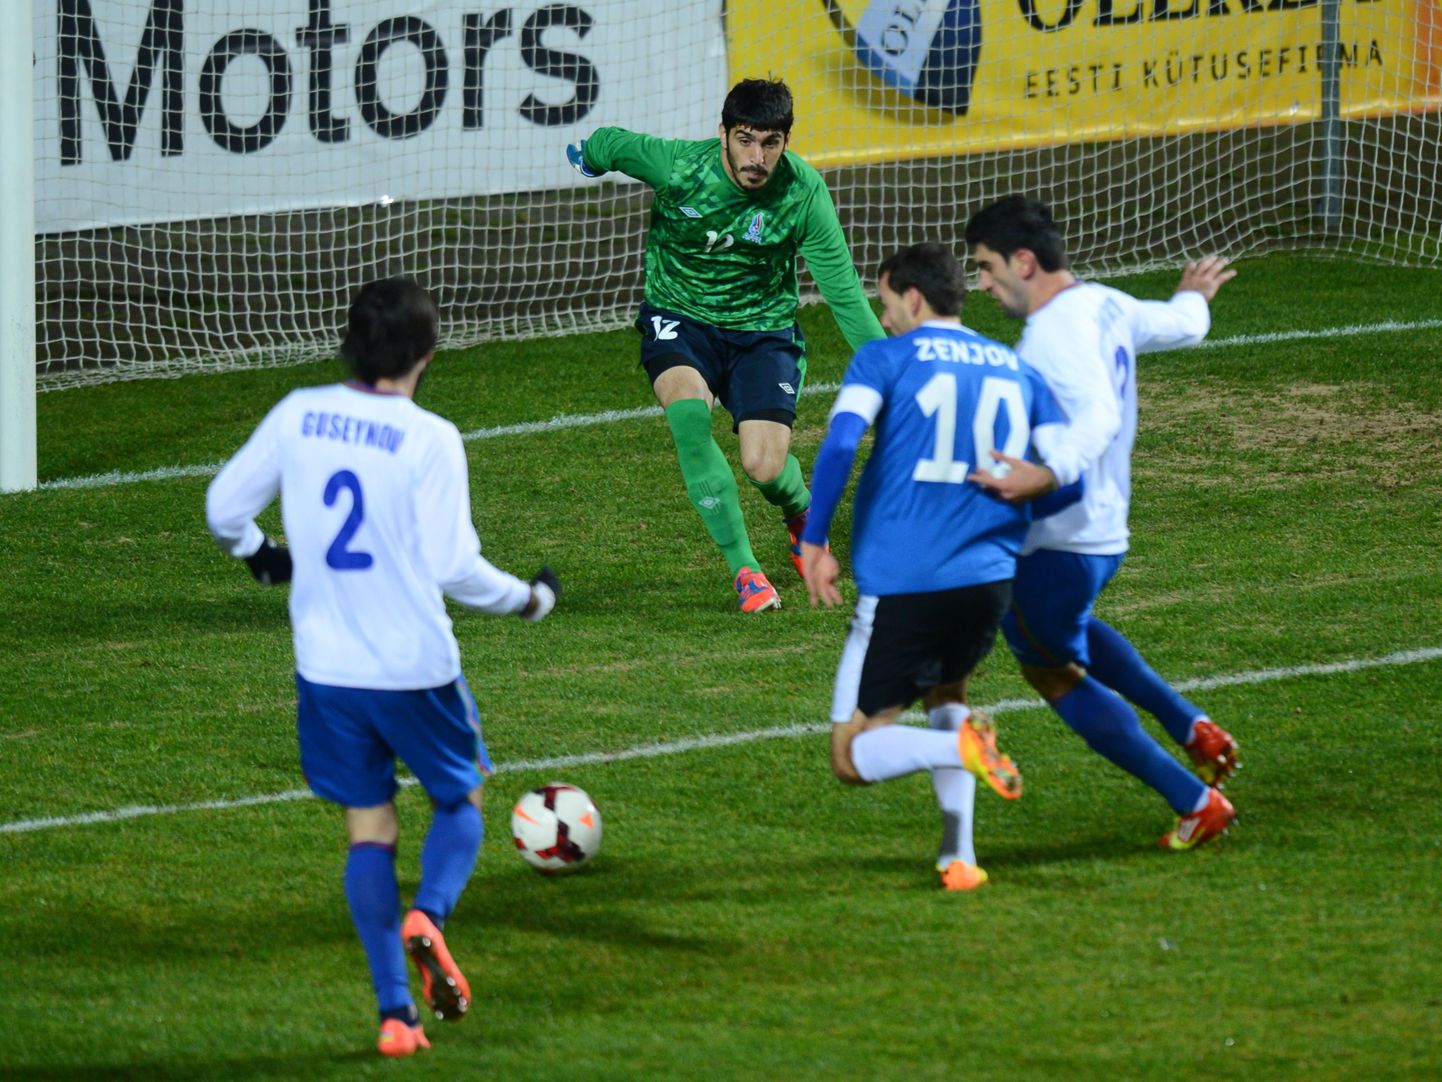 Eesti jalgpallikoondis pidas täna käimasoleva aasta viimase kodumängu, kui Lilleküla staadionil alistati 2:1 Aserbaidžaani koondis. 44. minutil viis Rauf Aliyev vastased juhtima, ent 54. minutil oli täpne Sergei Zenjov ning 2:1 võidu kindlustas 66. minutil Joel Lindpere.